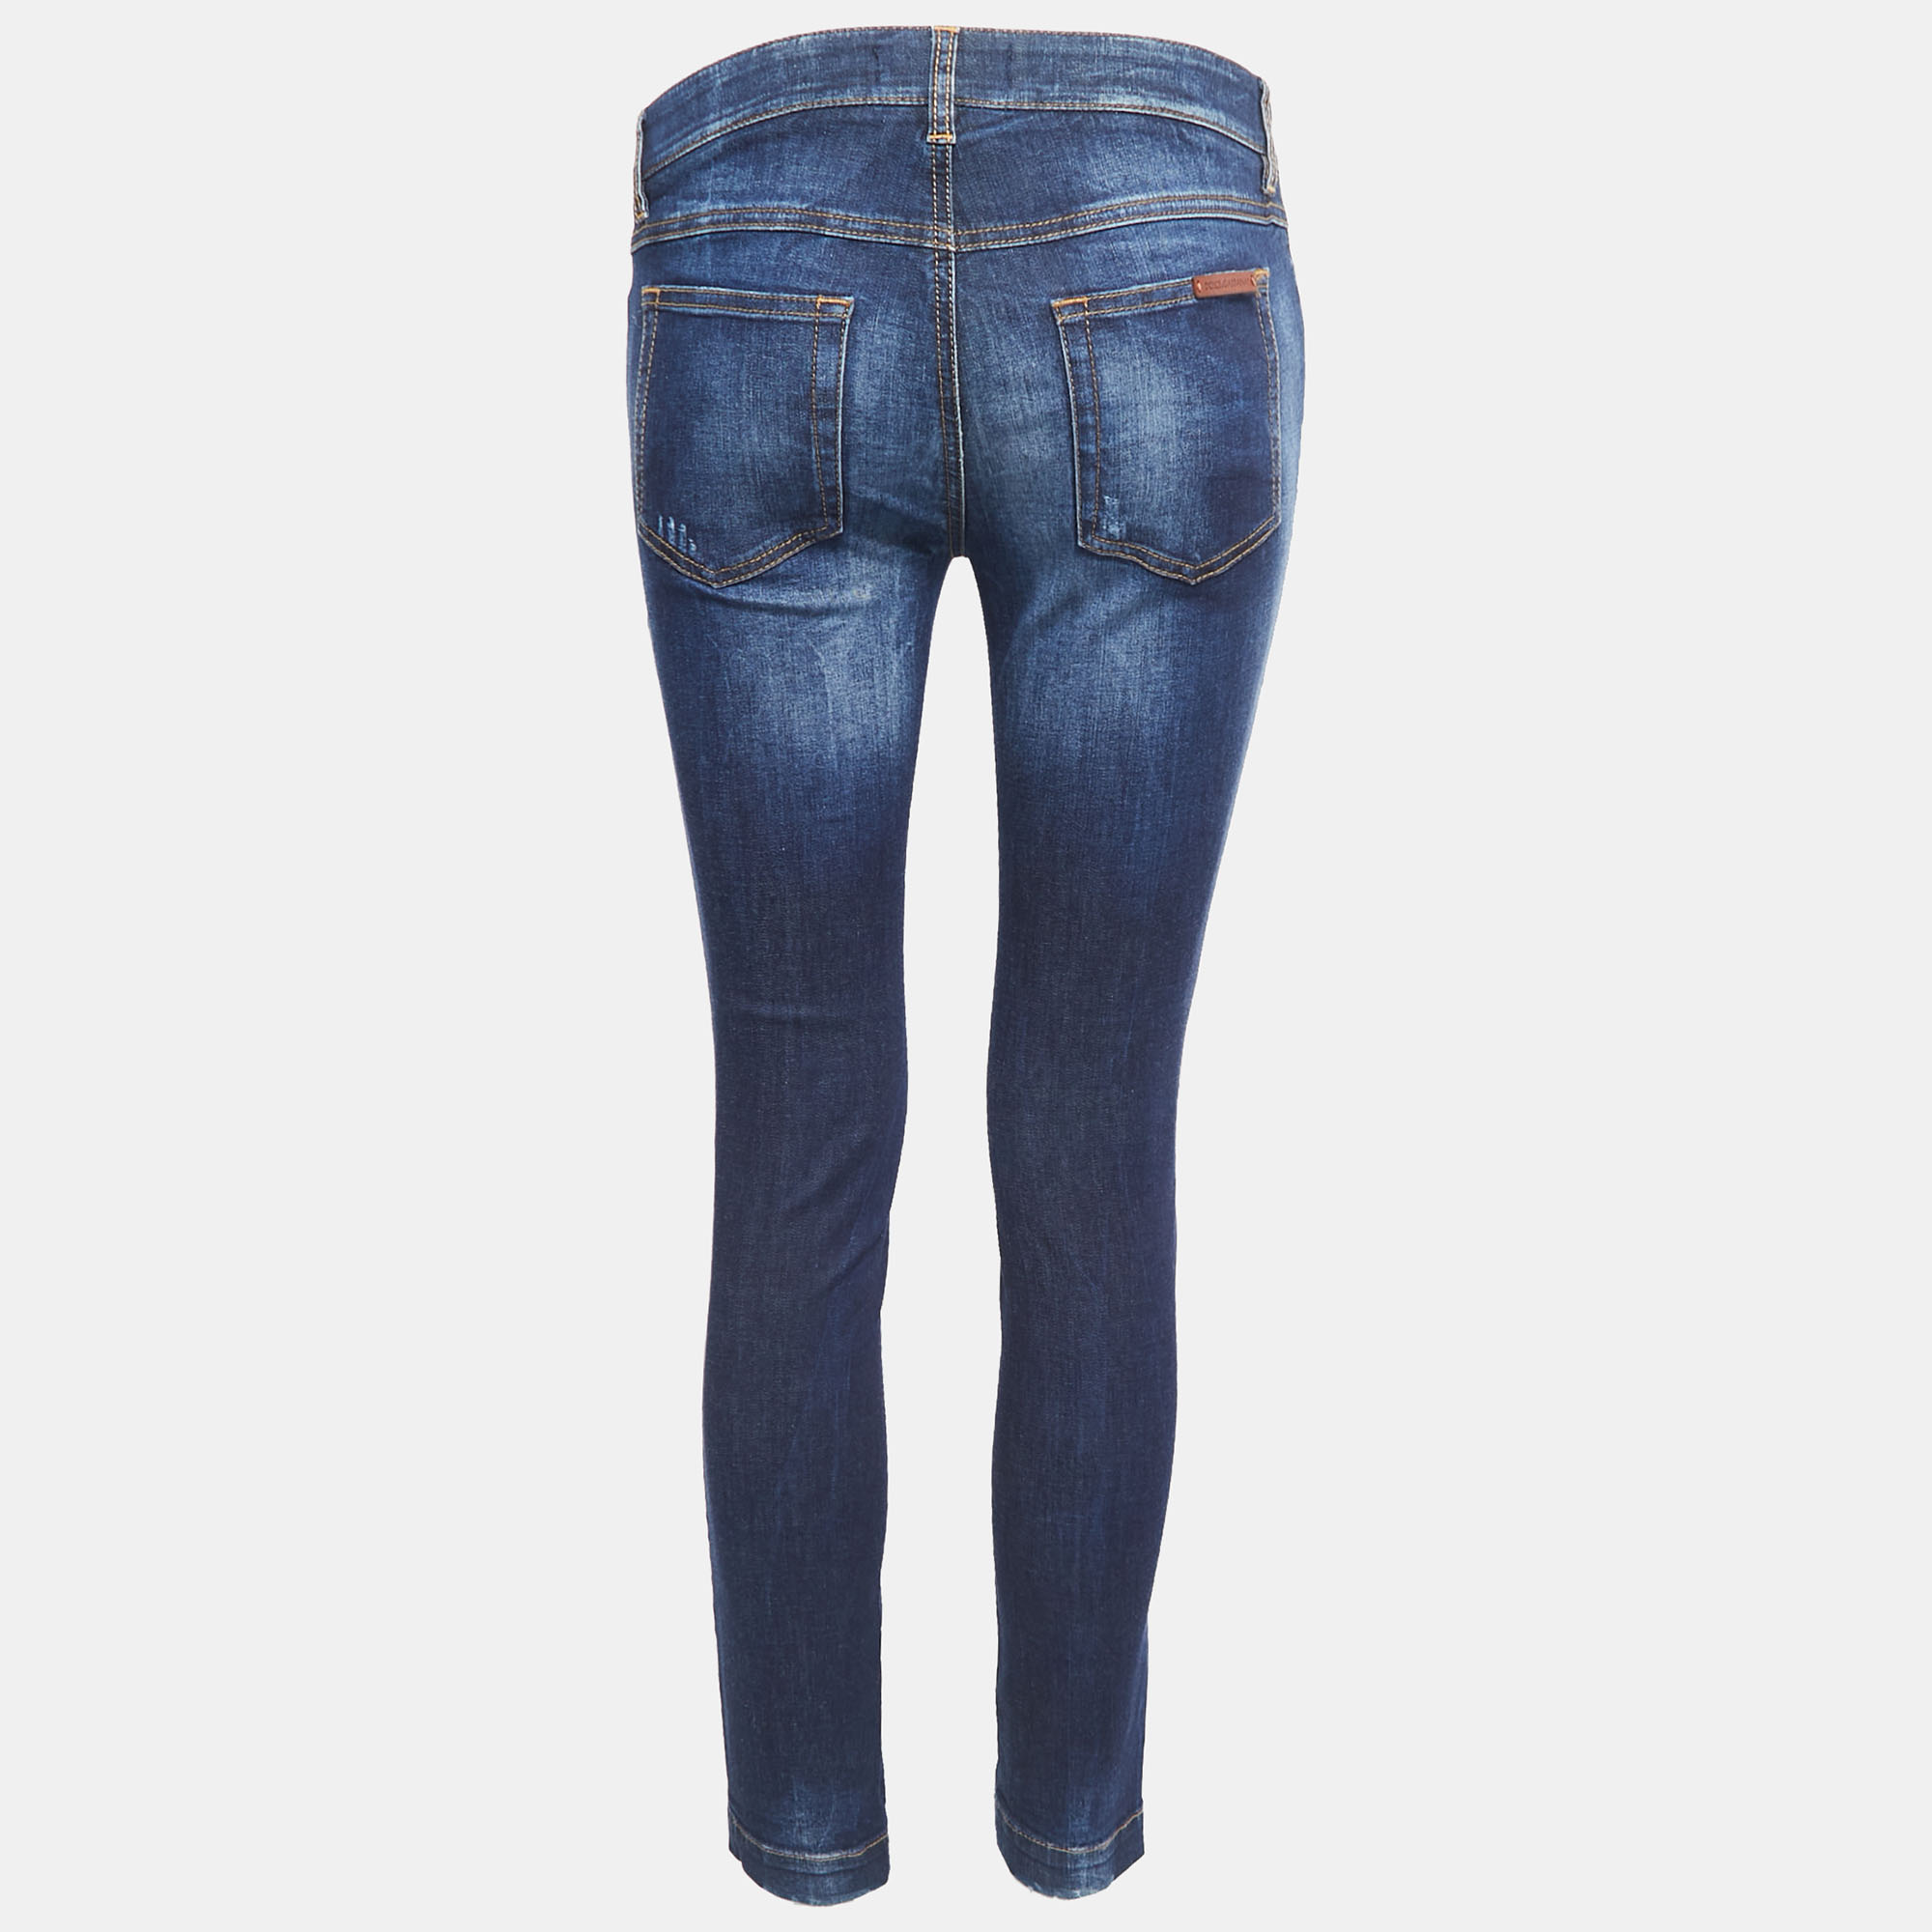 

Dolce & Gabbana Blue Denim Pretty Skinny Jeans  Waist 28